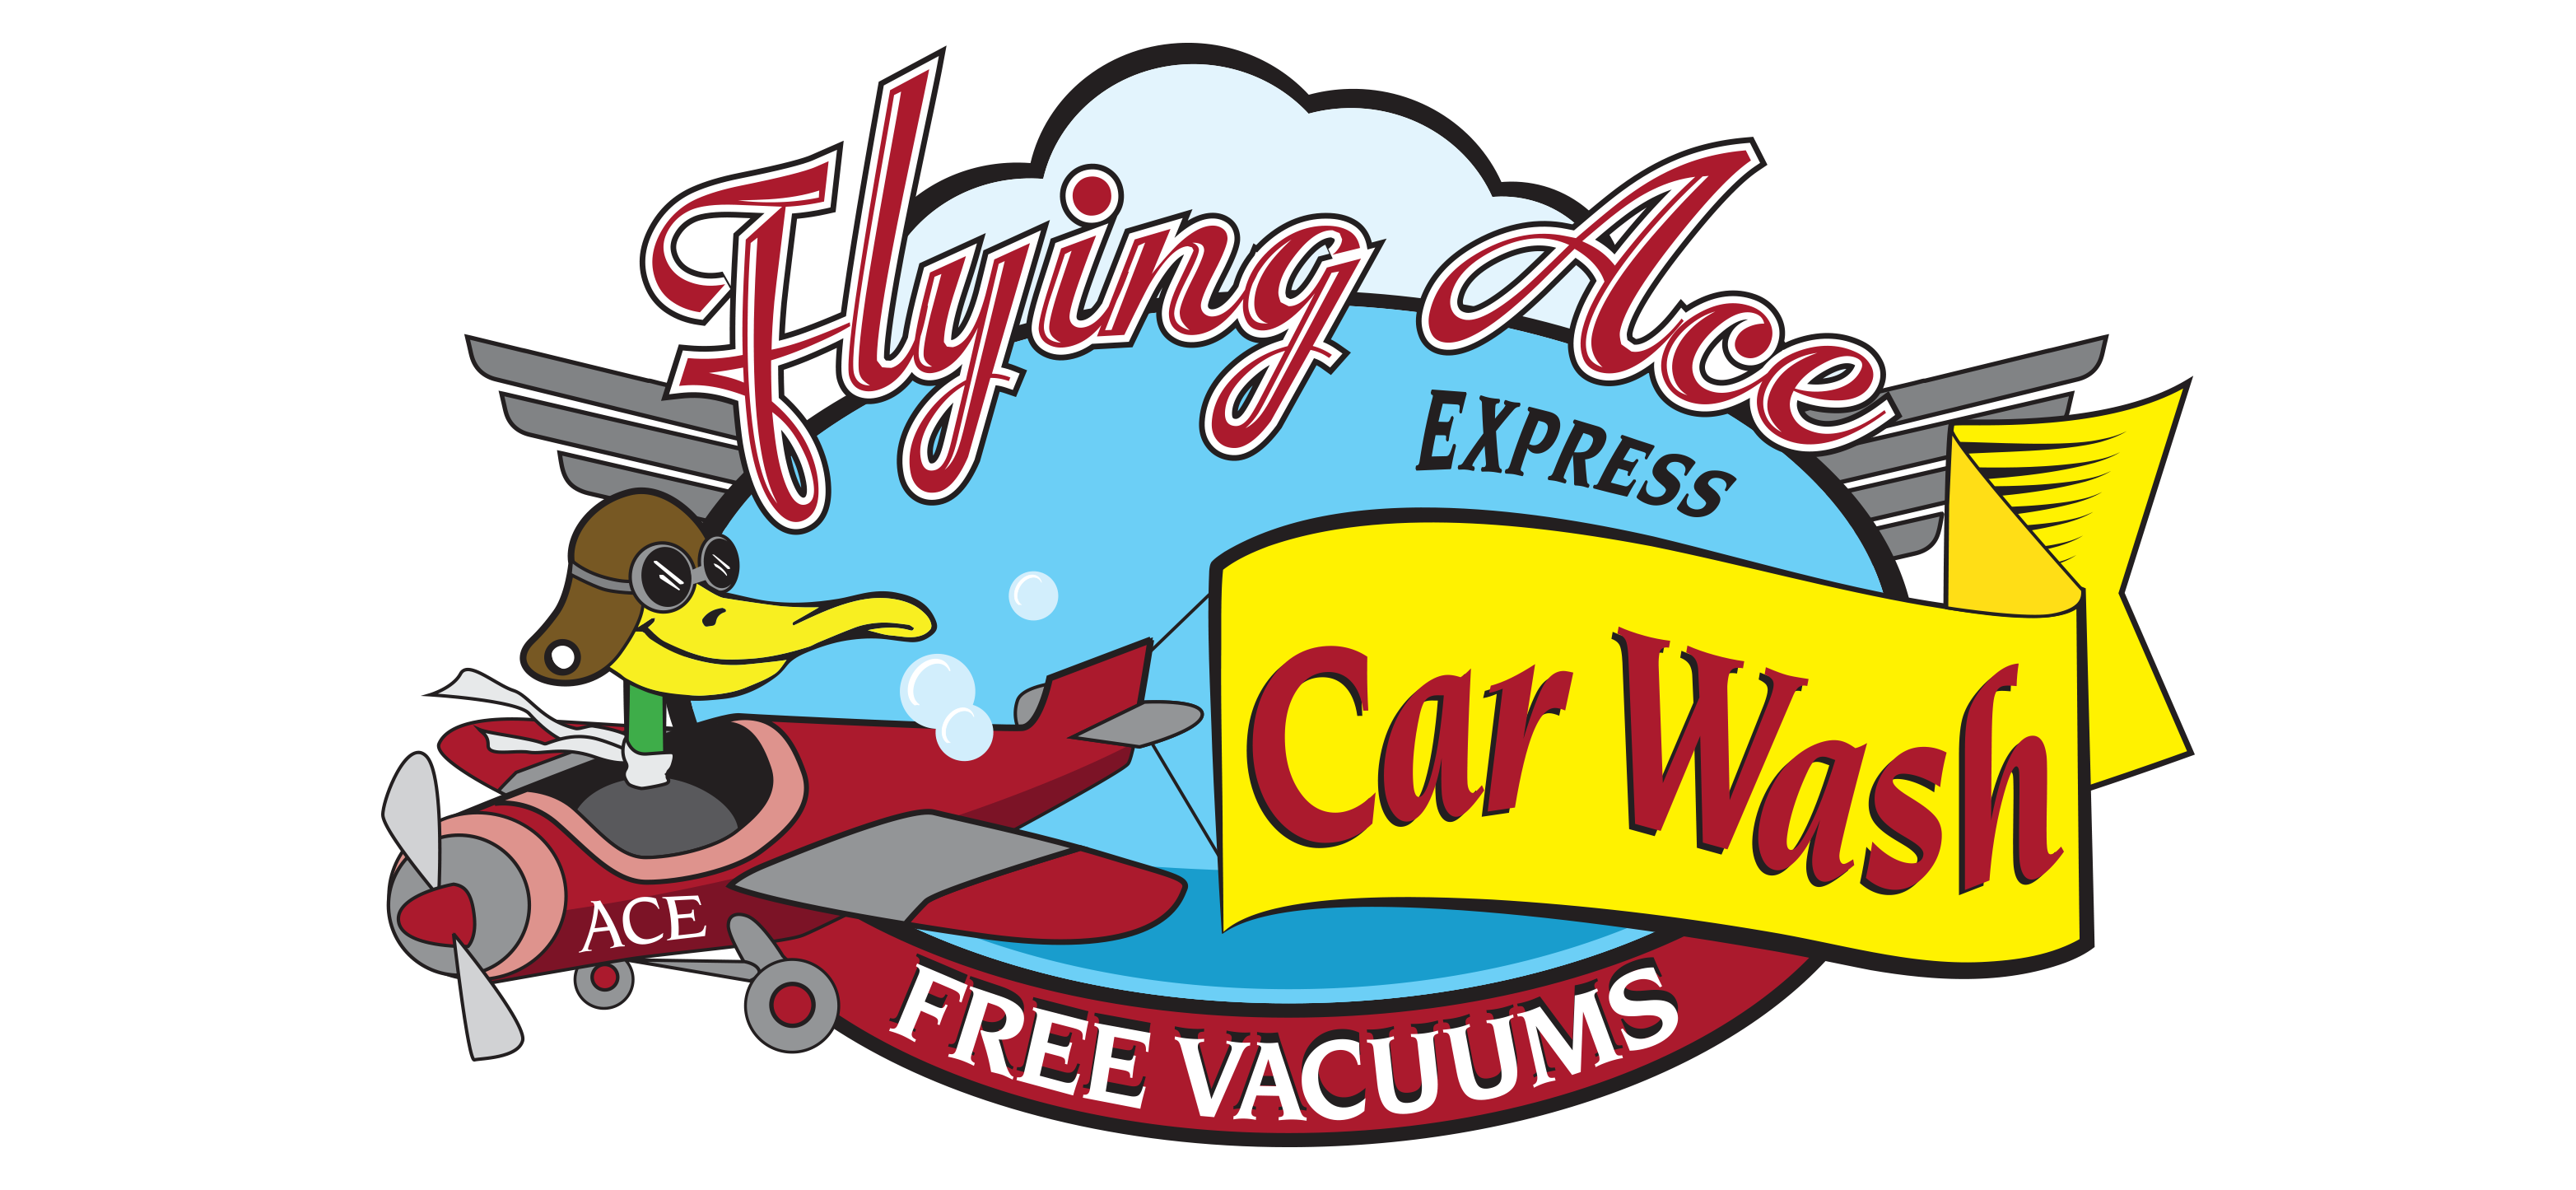 Flying Ace Express Car Wash Logo